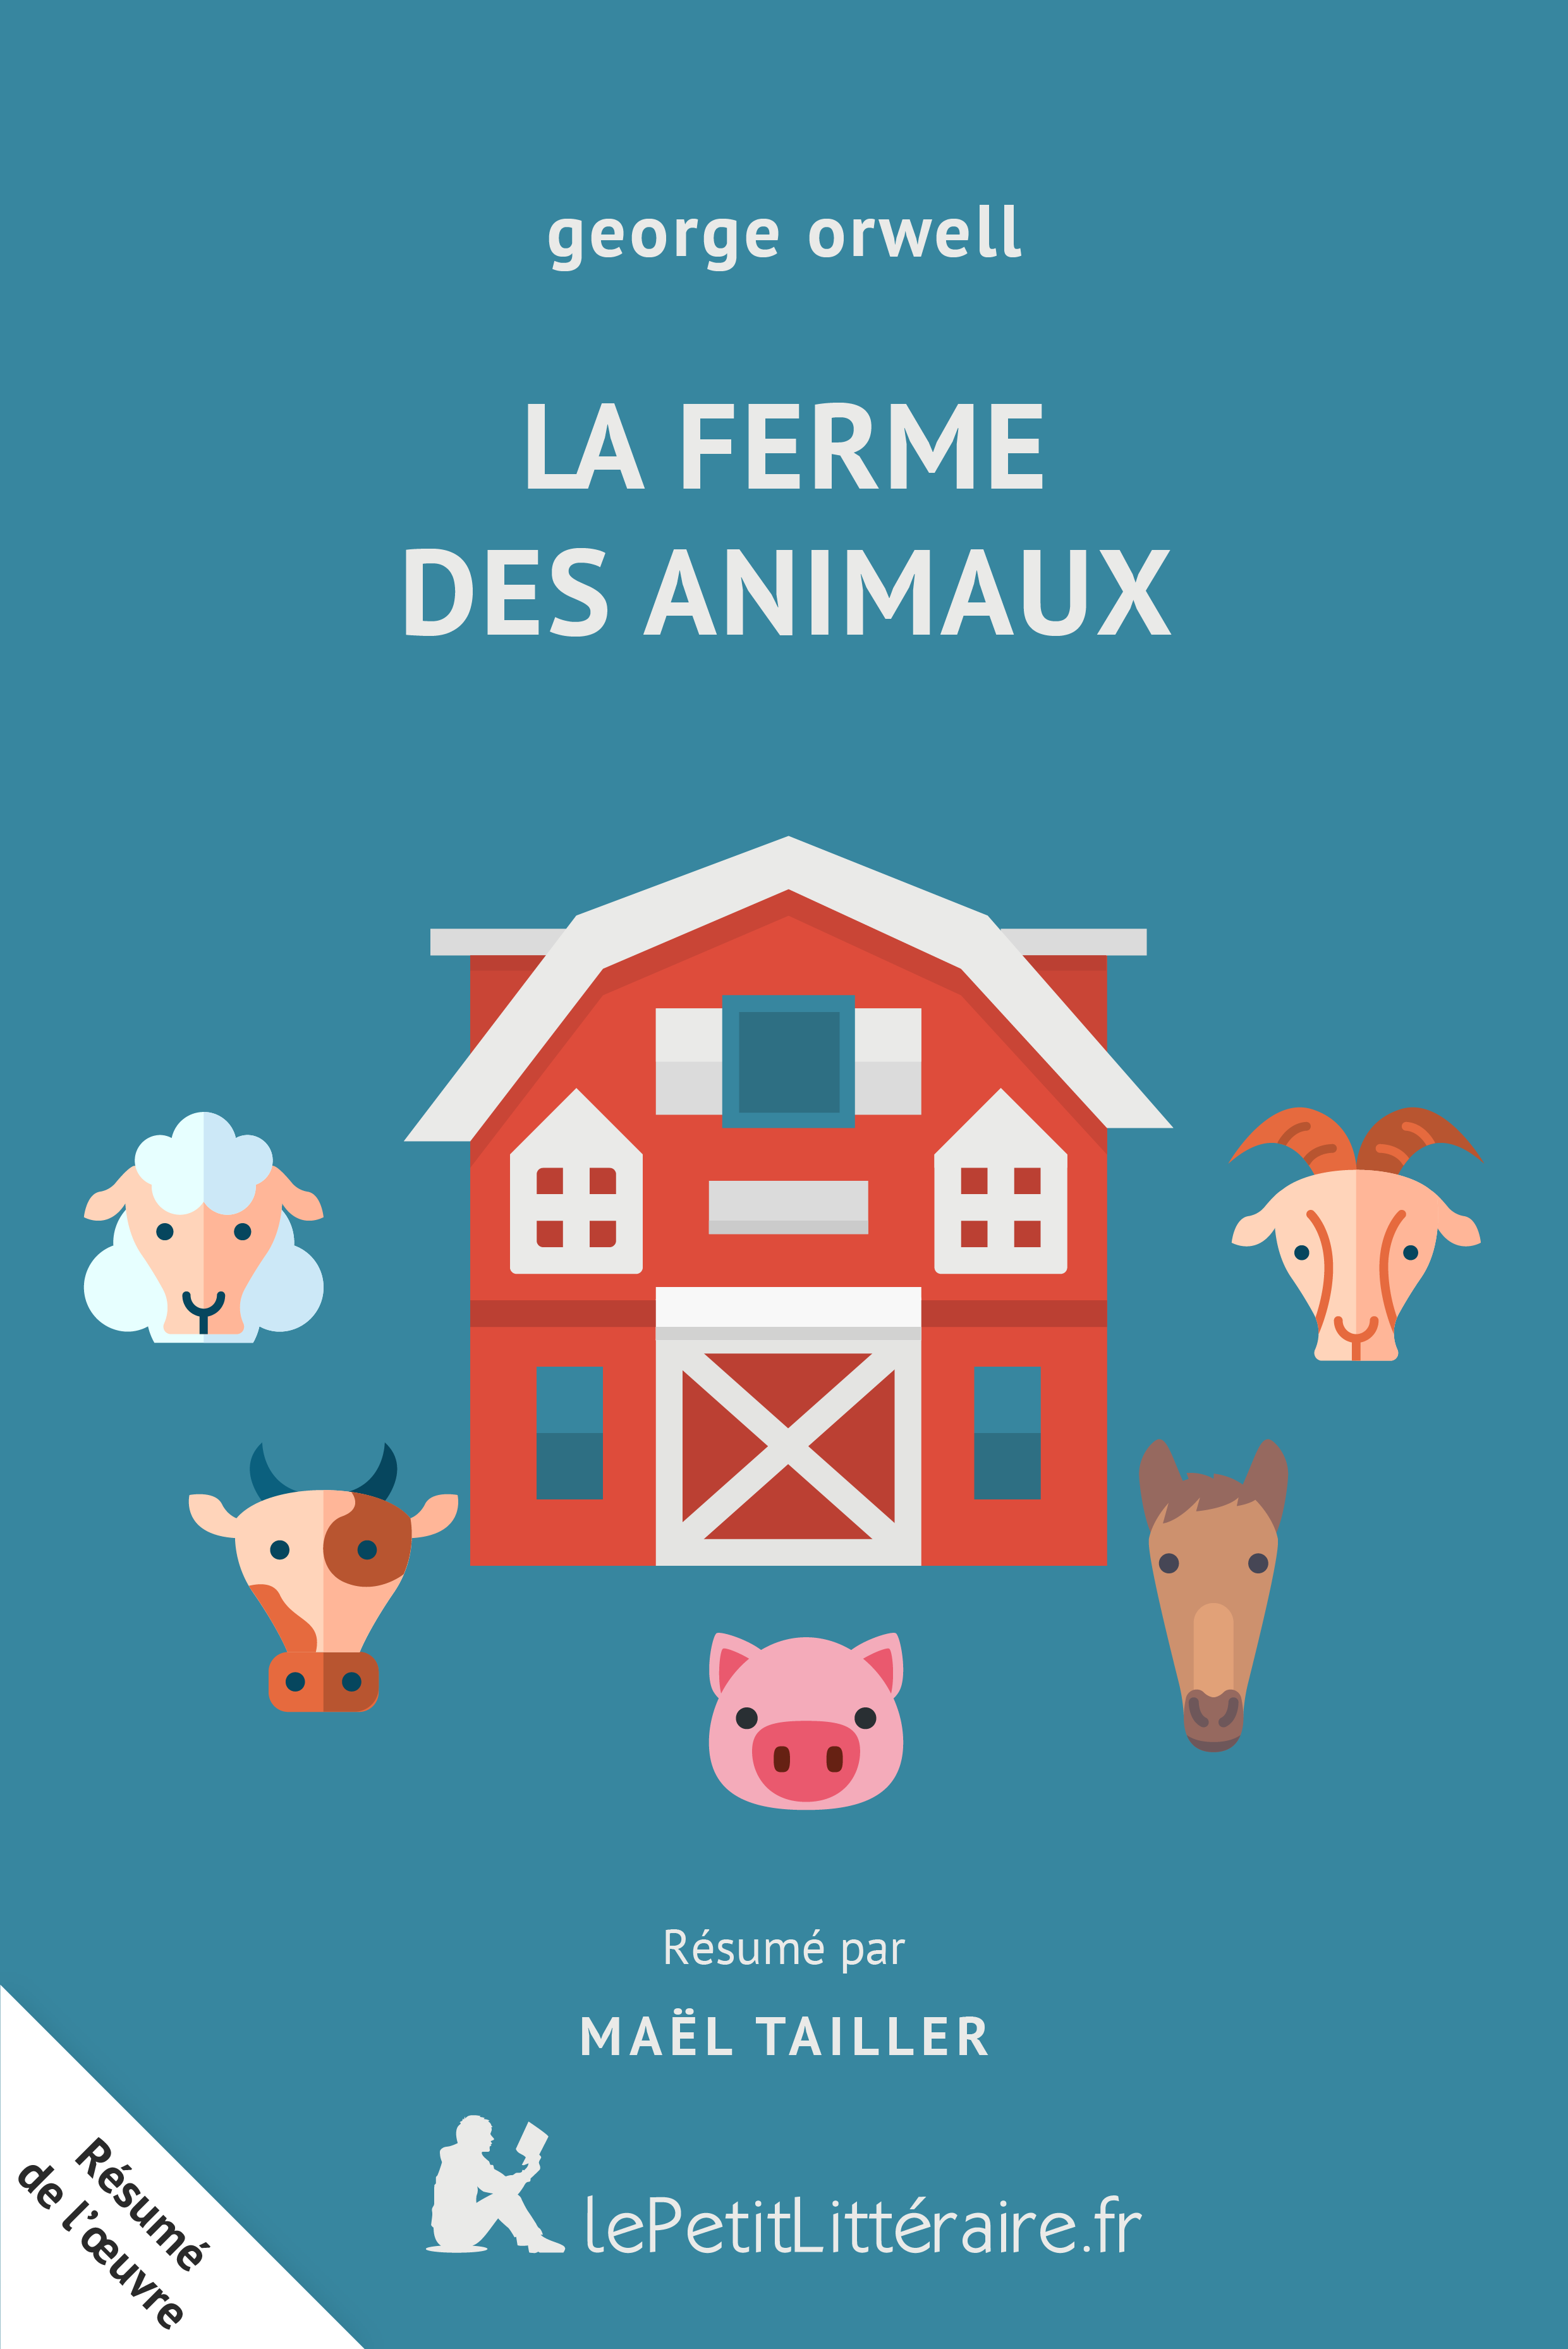 animal farm résumé chapitre 1 - animal farm summary by chapter